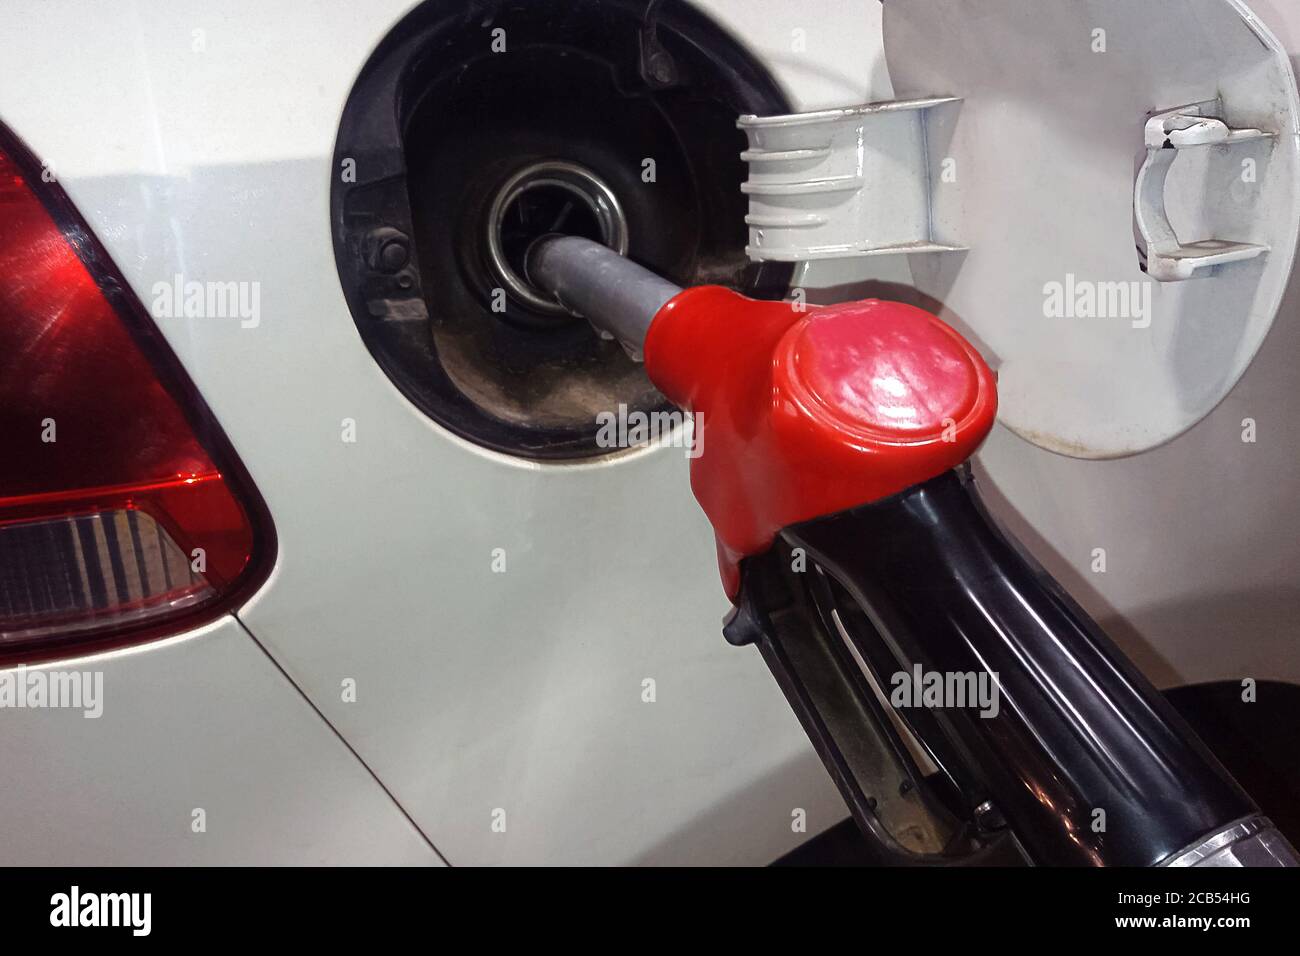 regering Terugspoelen Duur Tanken von Benzin in einem Autotank aus nächster Nähe Stockfotografie -  Alamy